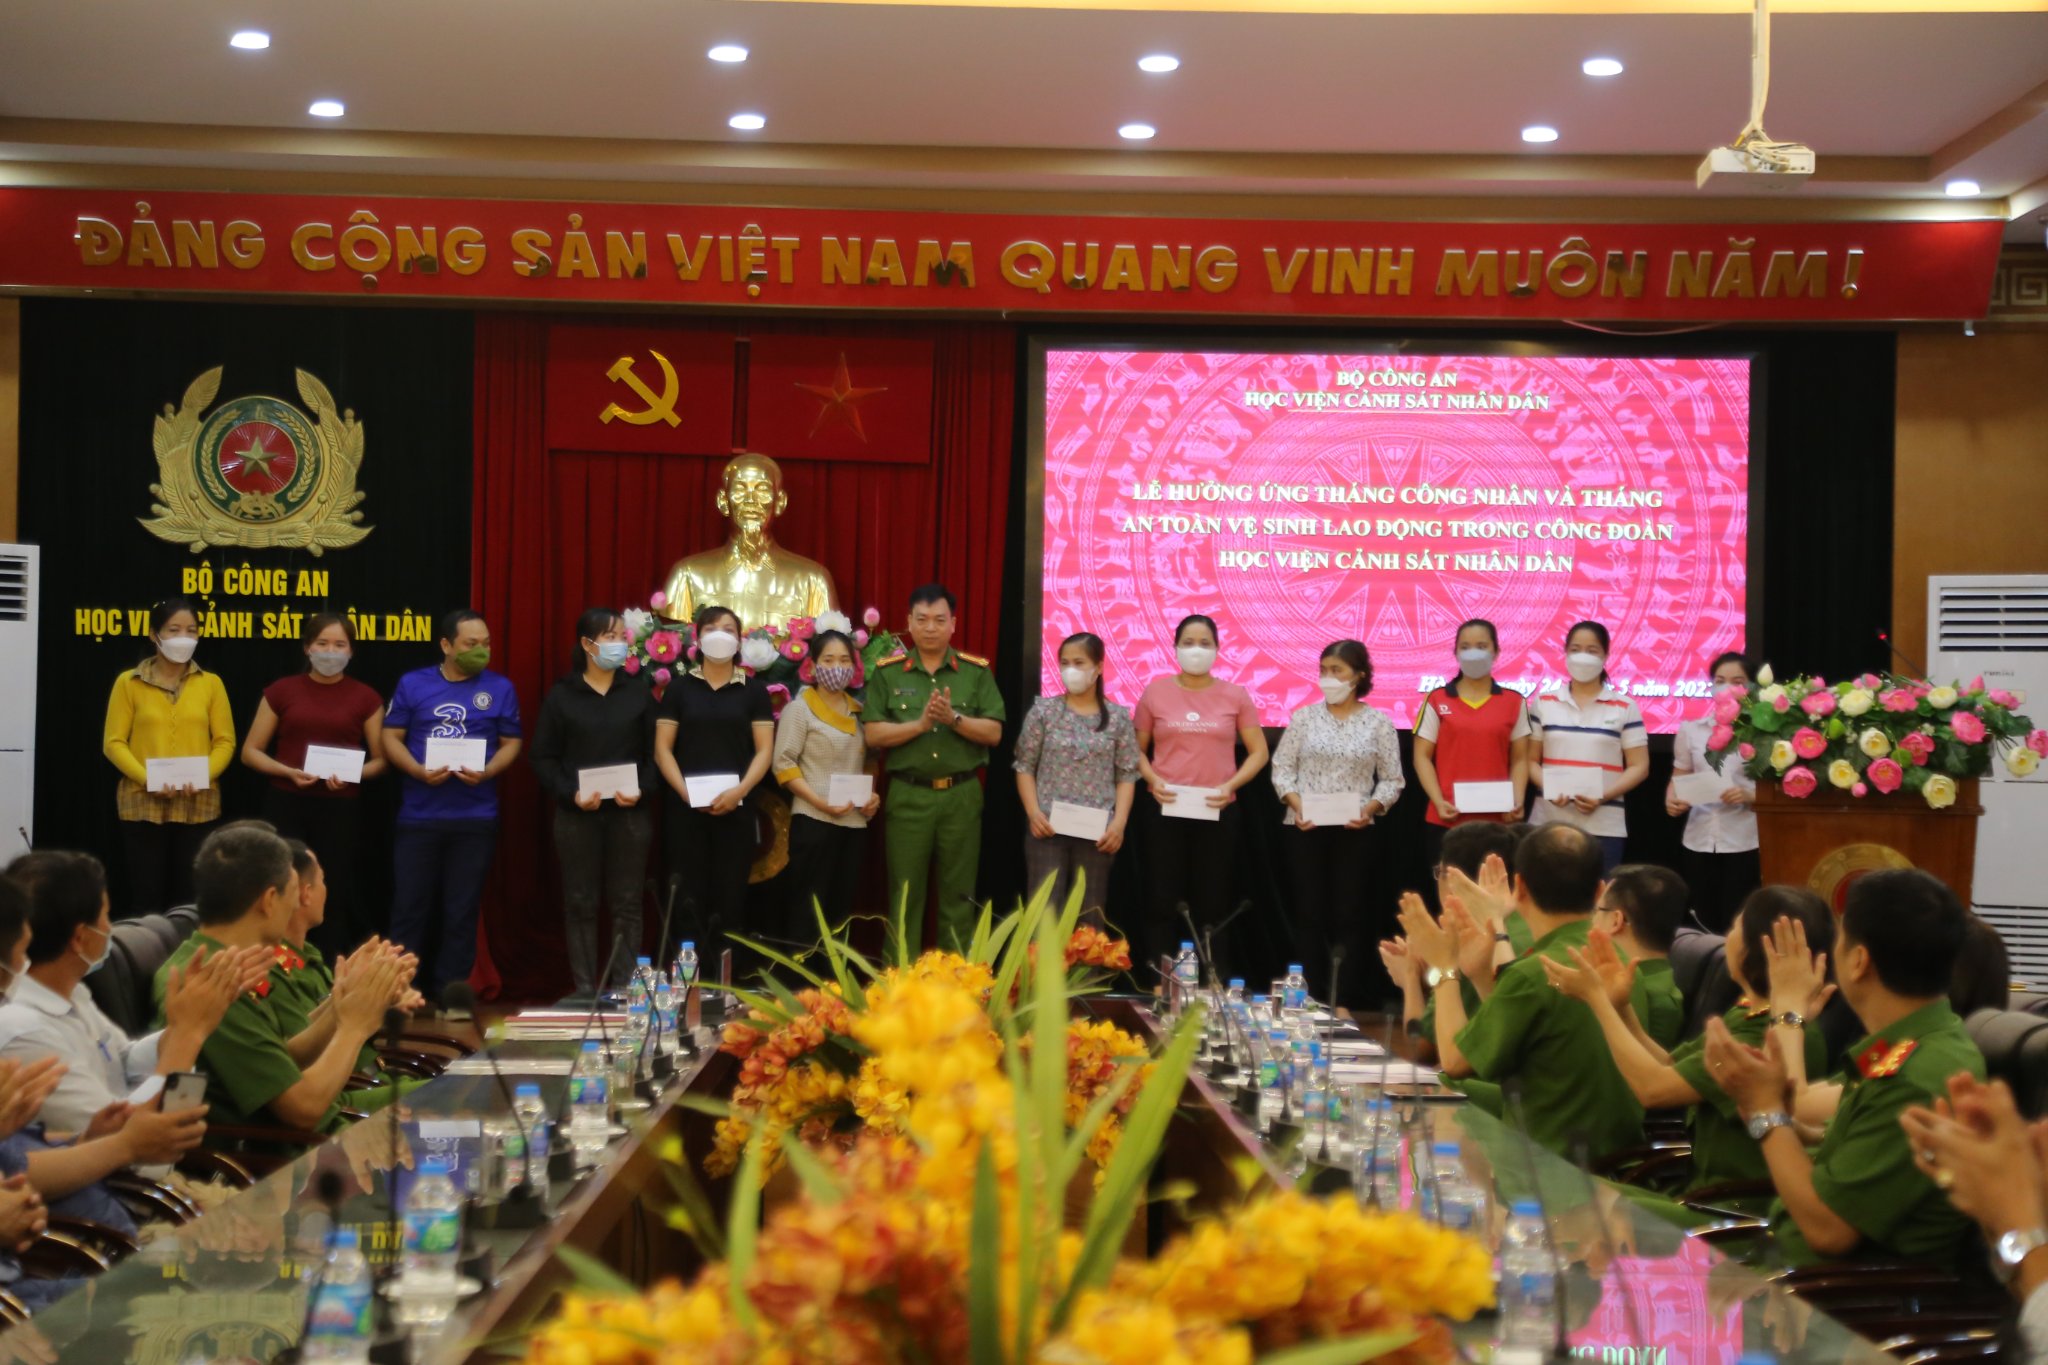 Đại tá, TS Nguyễn Đăng Sáu - Uỷ viên Ban Thường vụ, Phó Giám đốc Học viện CSND trao quà cho đoàn viên công đoàn có hoàn cảnh khó khăn